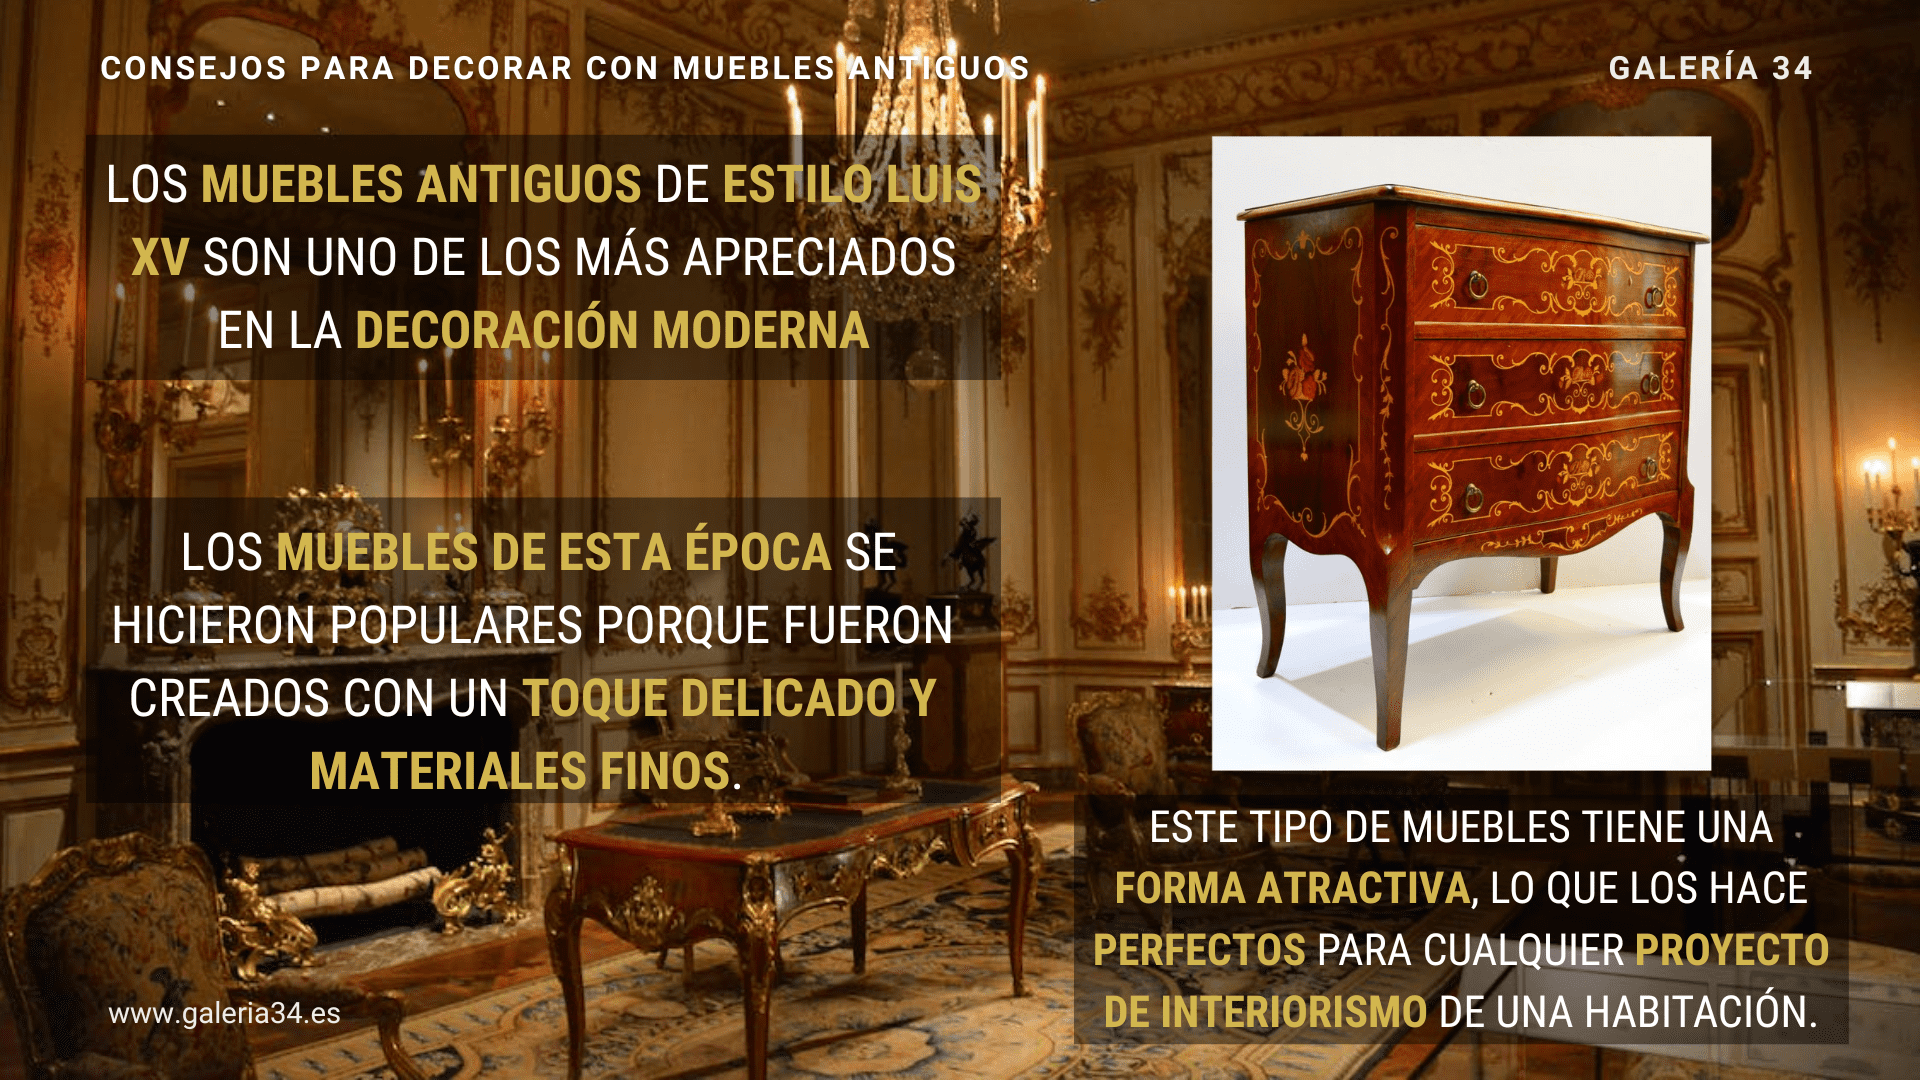 Los muebles antiguos de estilo Luis XV son uno de los más apreciados en la decoración moderna